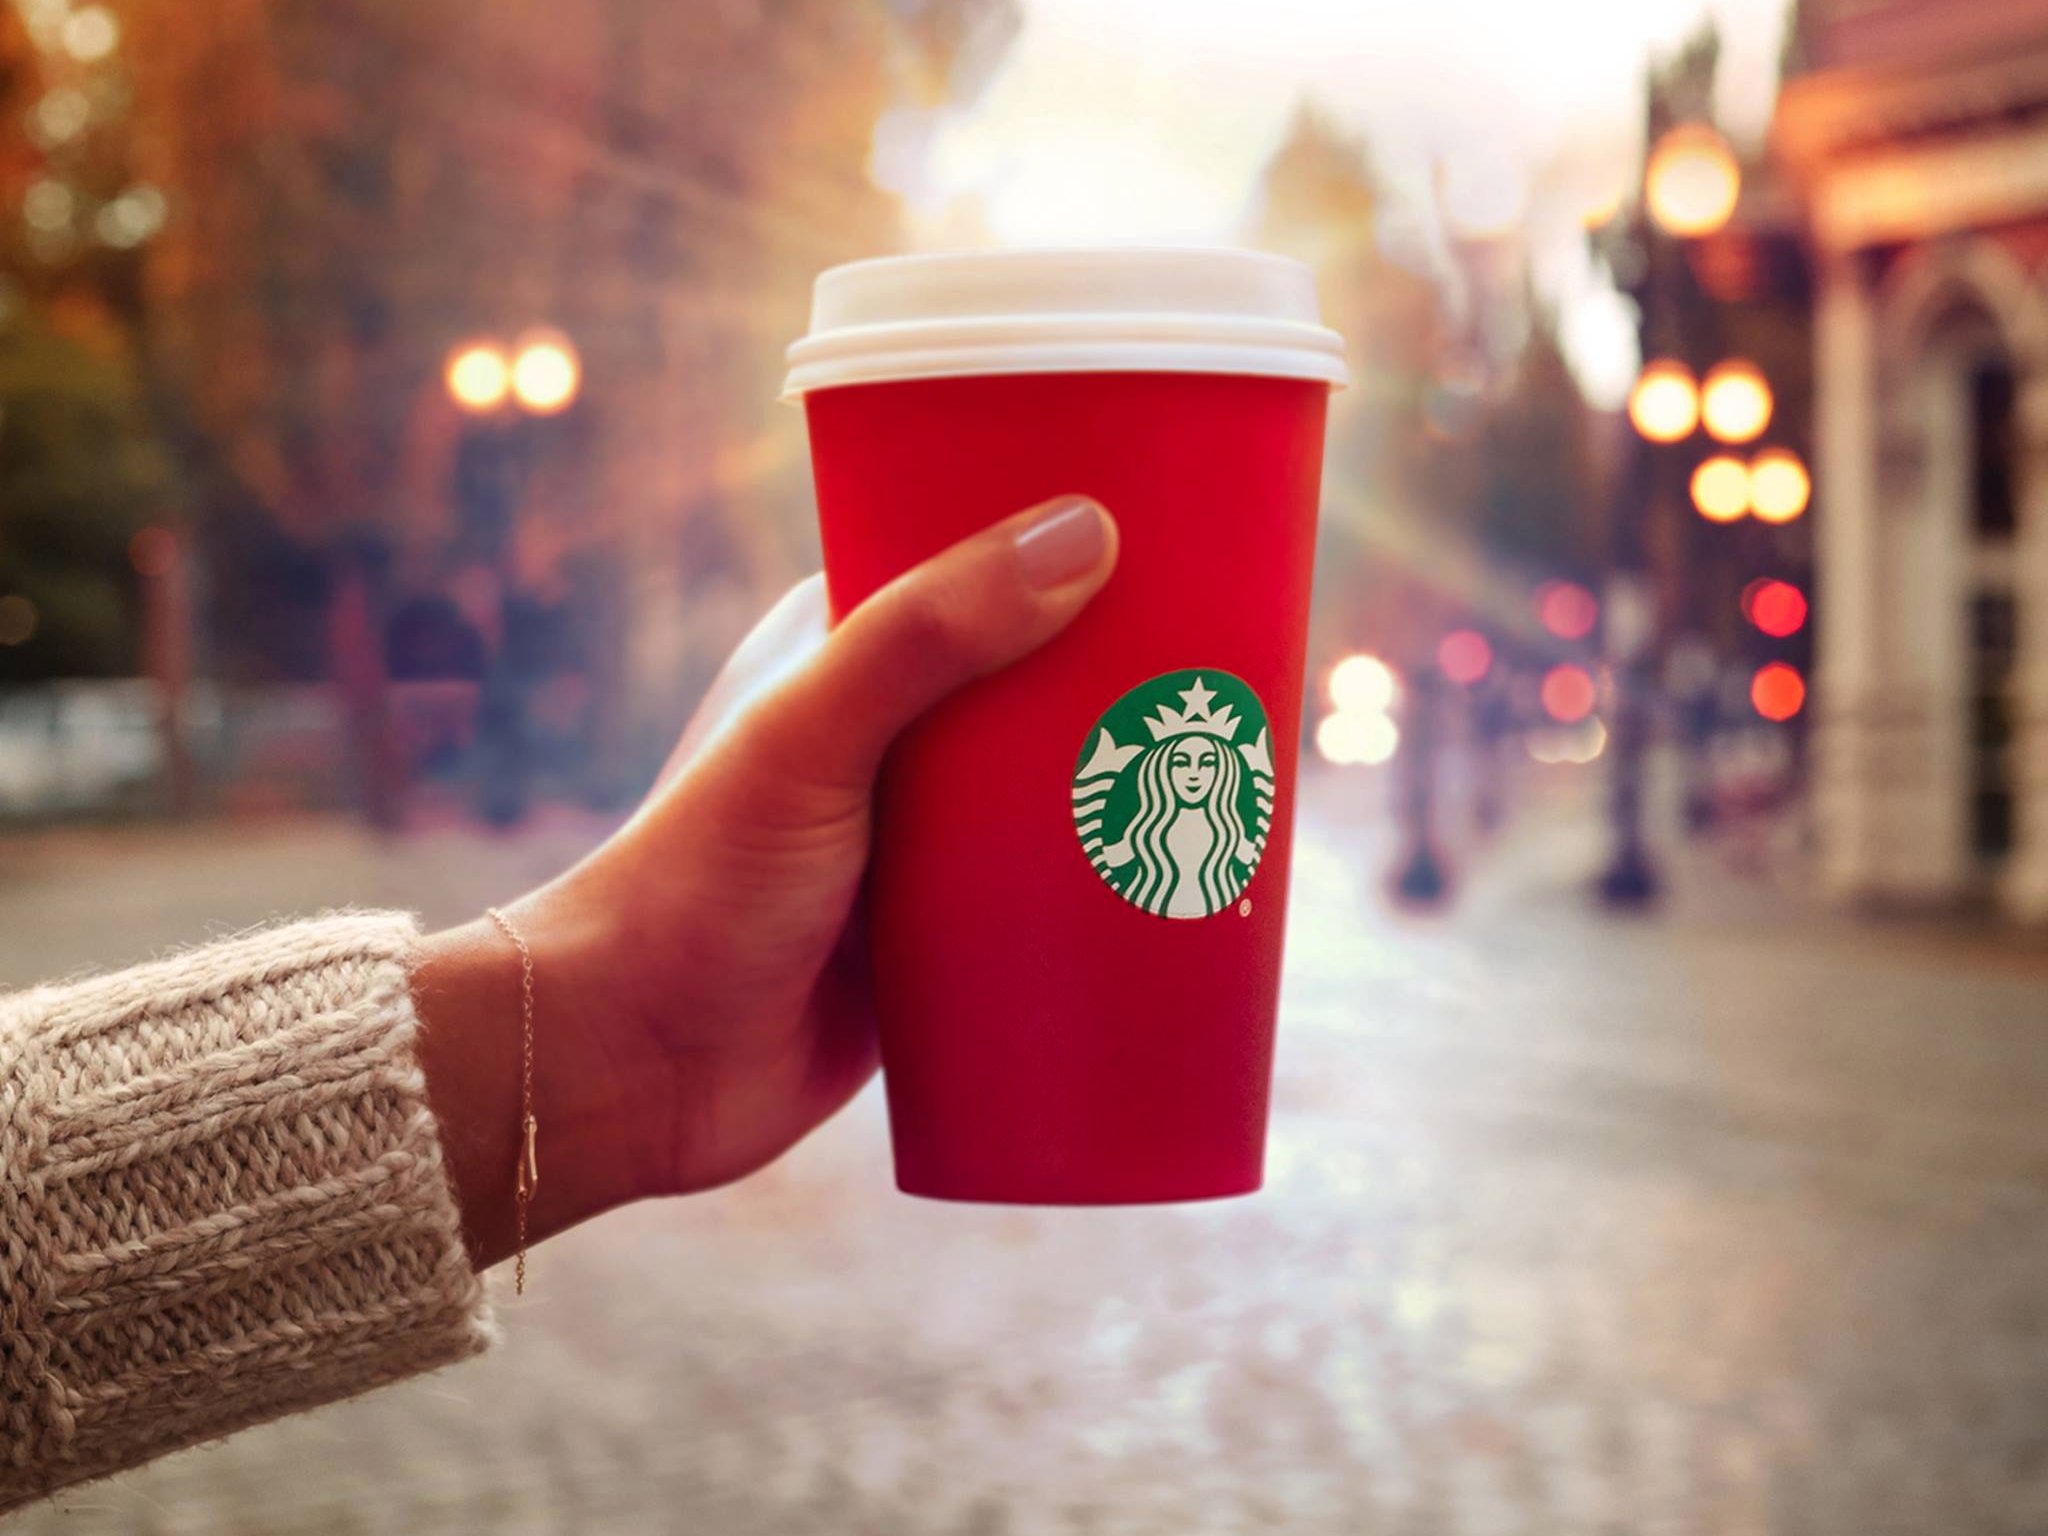 Học được gì từ sự thành công của Starbucks  ISharevn  Tôi Chia Sẻ  Chúng  Ta Chia Sẻ